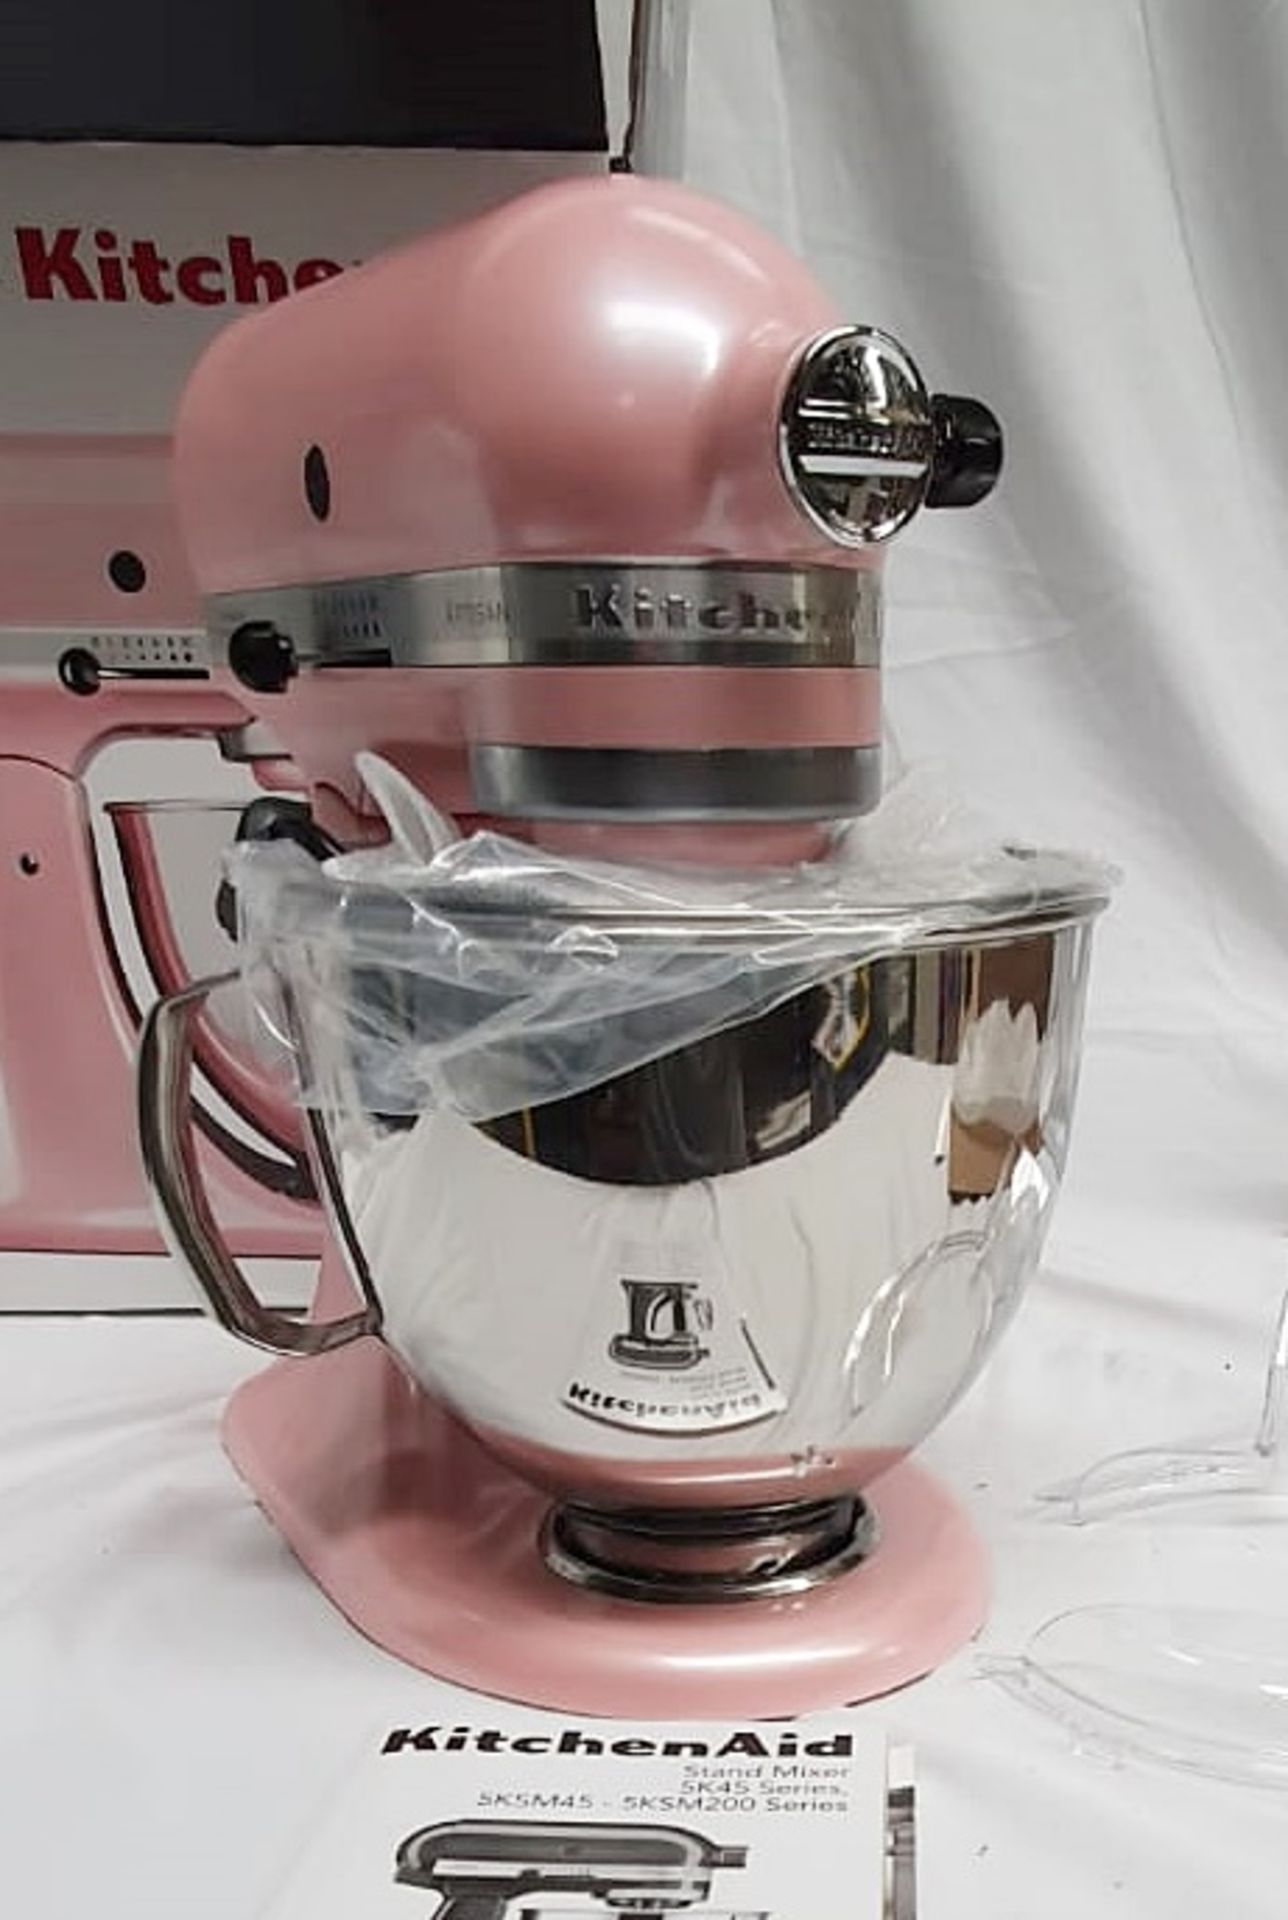 1 x KITCHENAID Artisan Stand Mixer In Pink (4.7L) - Original Price £699.00 - Image 4 of 7